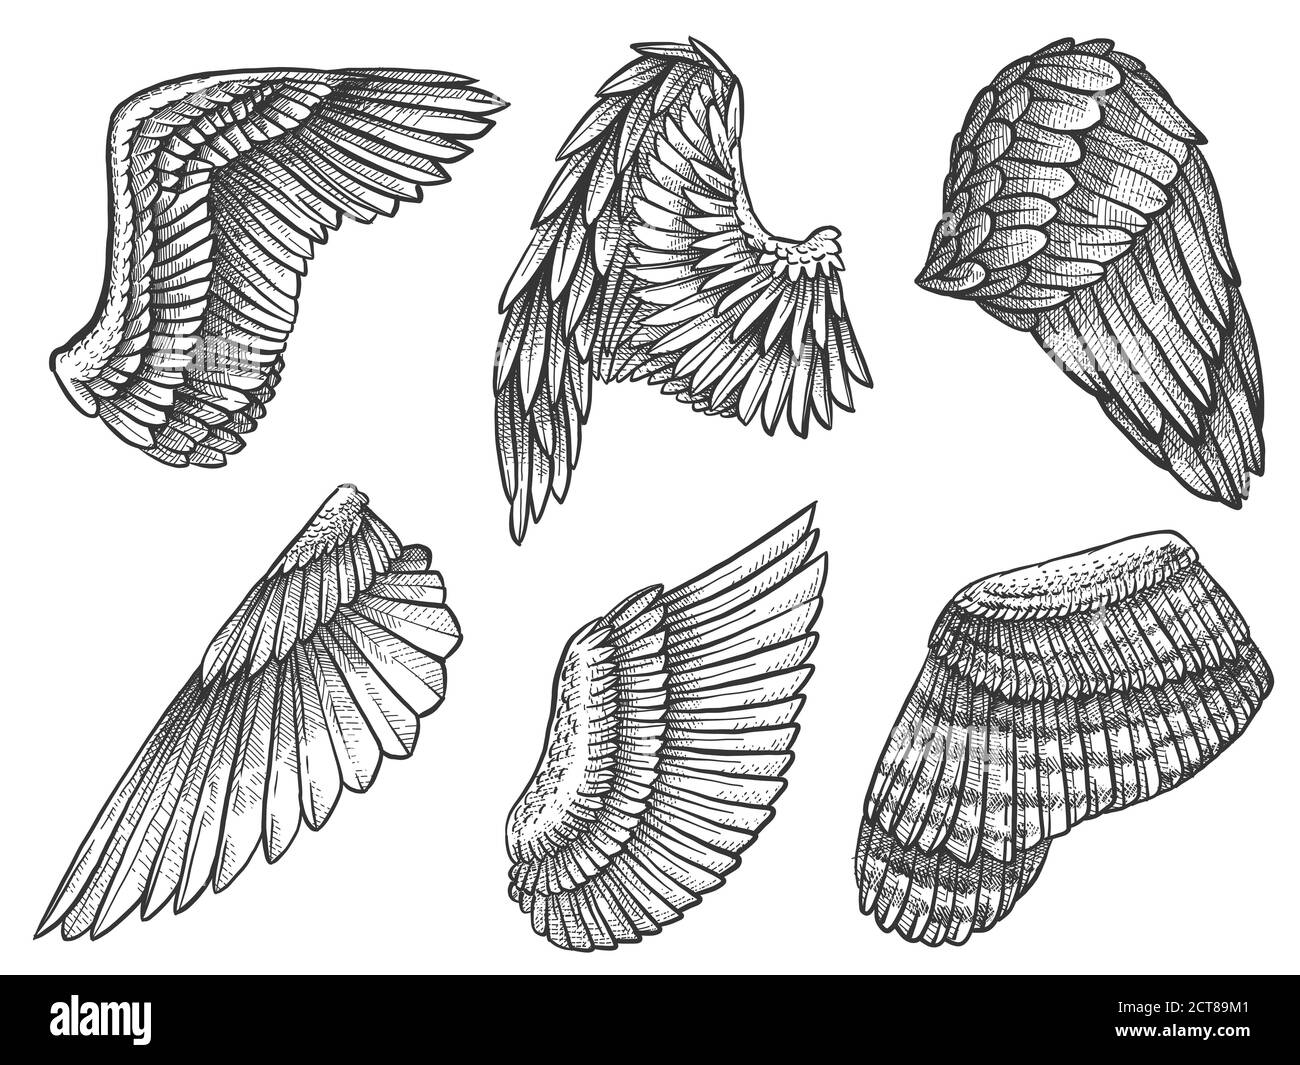 Esquissez des ailes. Aigle dessiné à la main, ange aile détaillée avec plumes, éléments héraldiques pour tatouage, carte ou mascot gravé vecteur de dessin. Aile héraldique Illustration de Vecteur